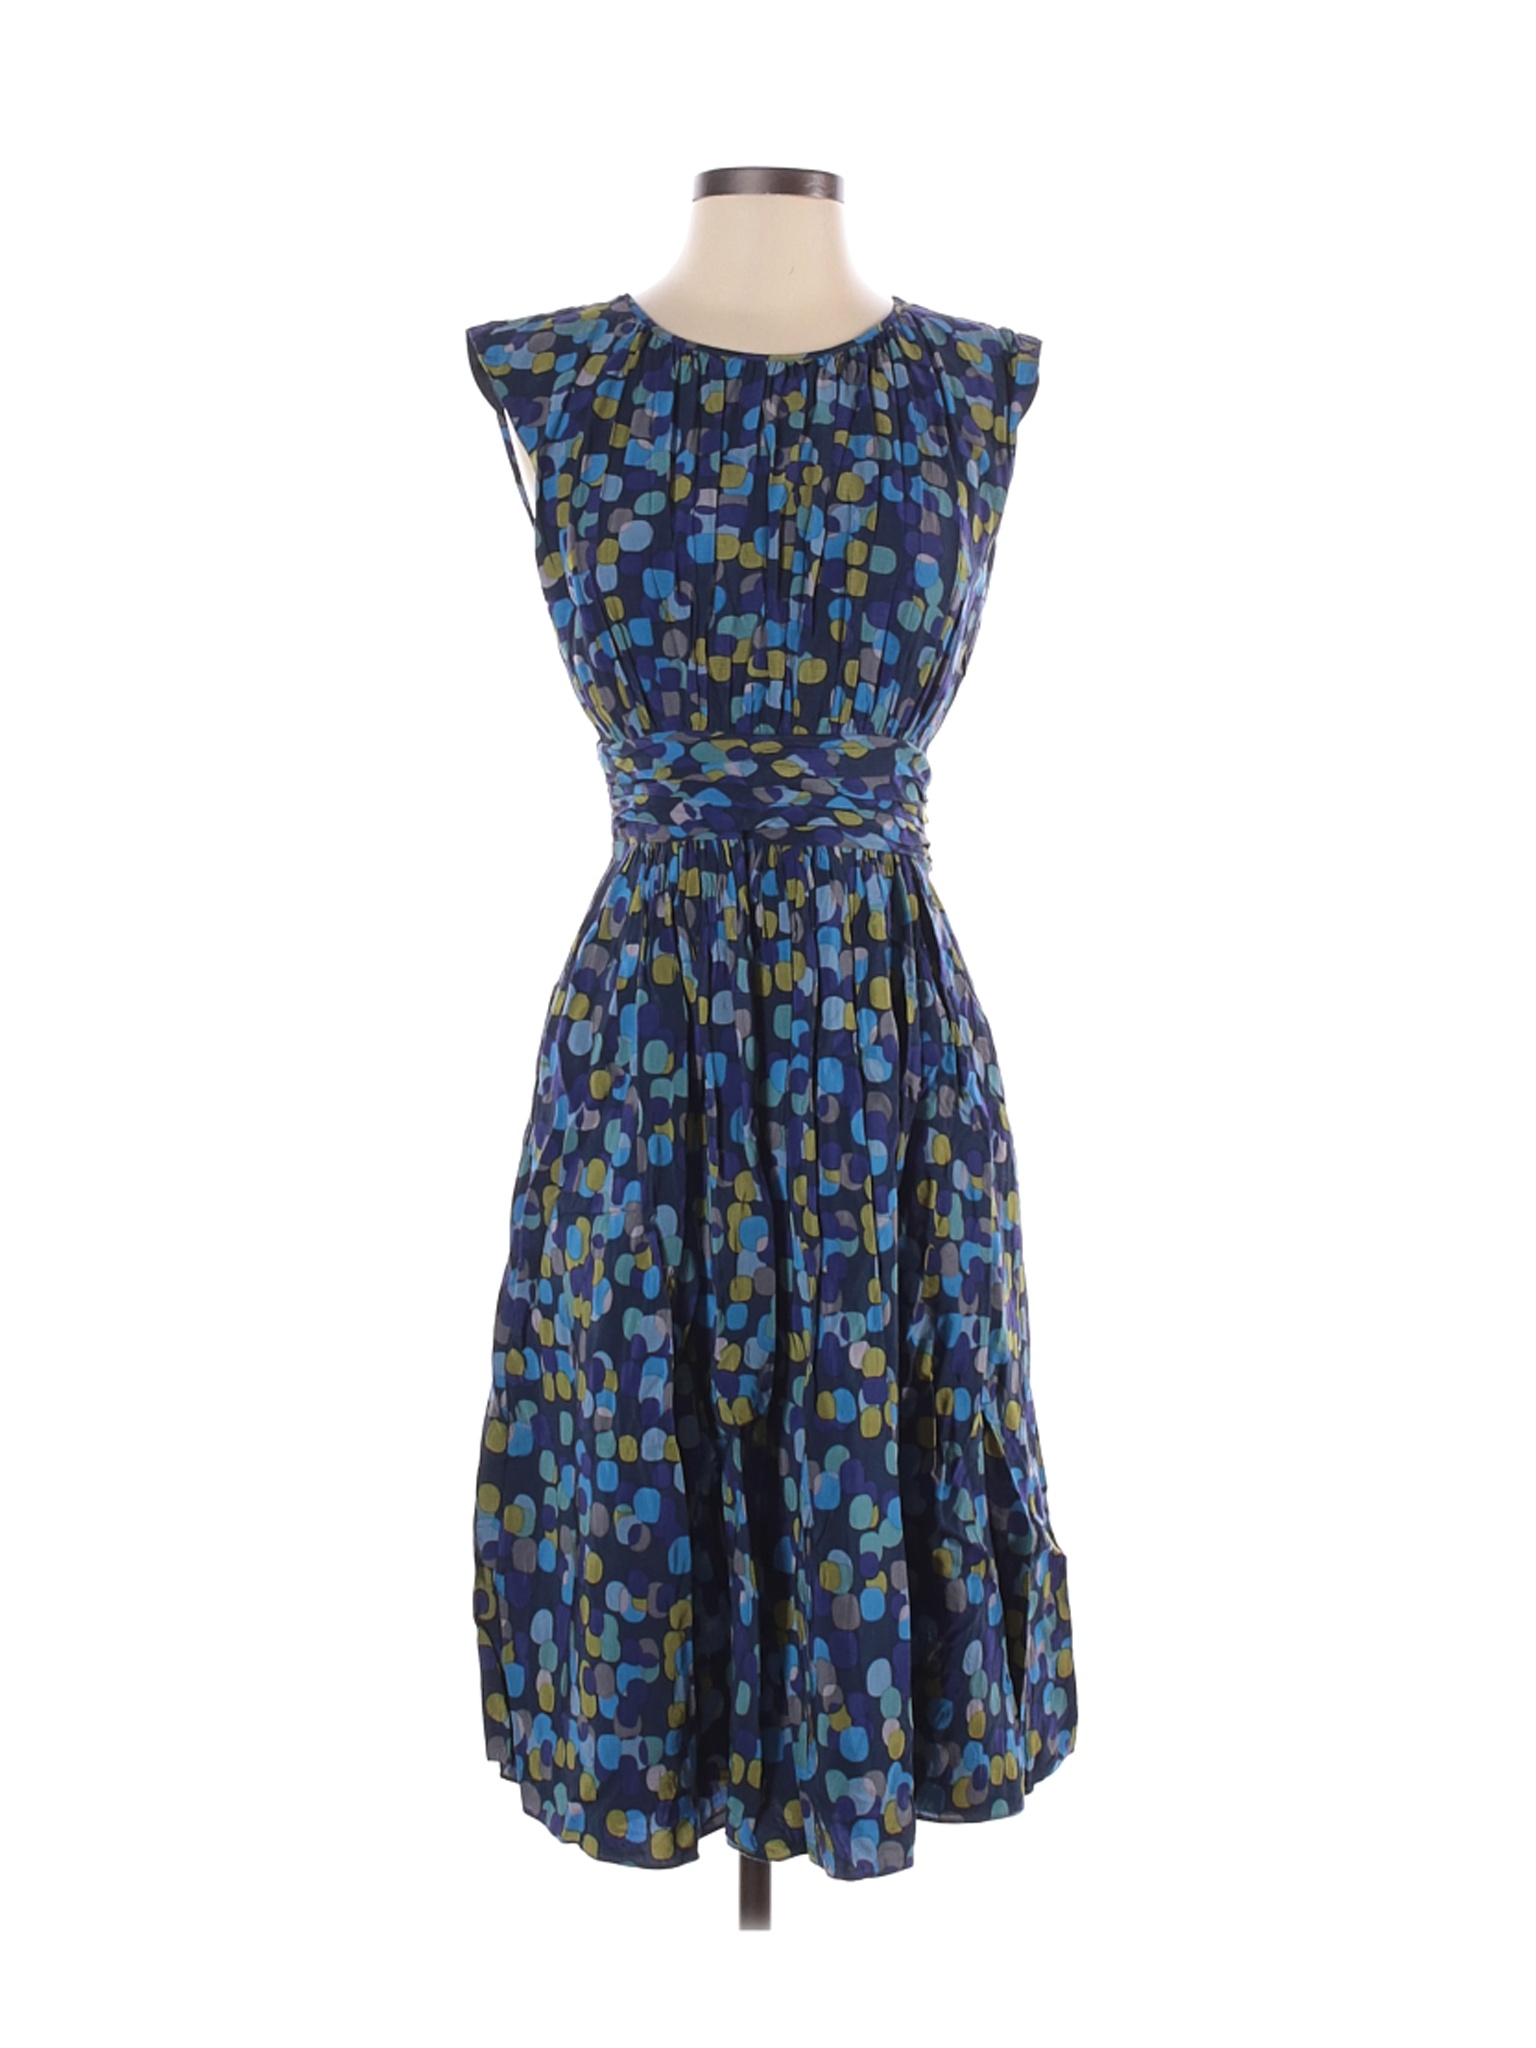 Boden Women Blue Casual Dress 4 Tall | eBay